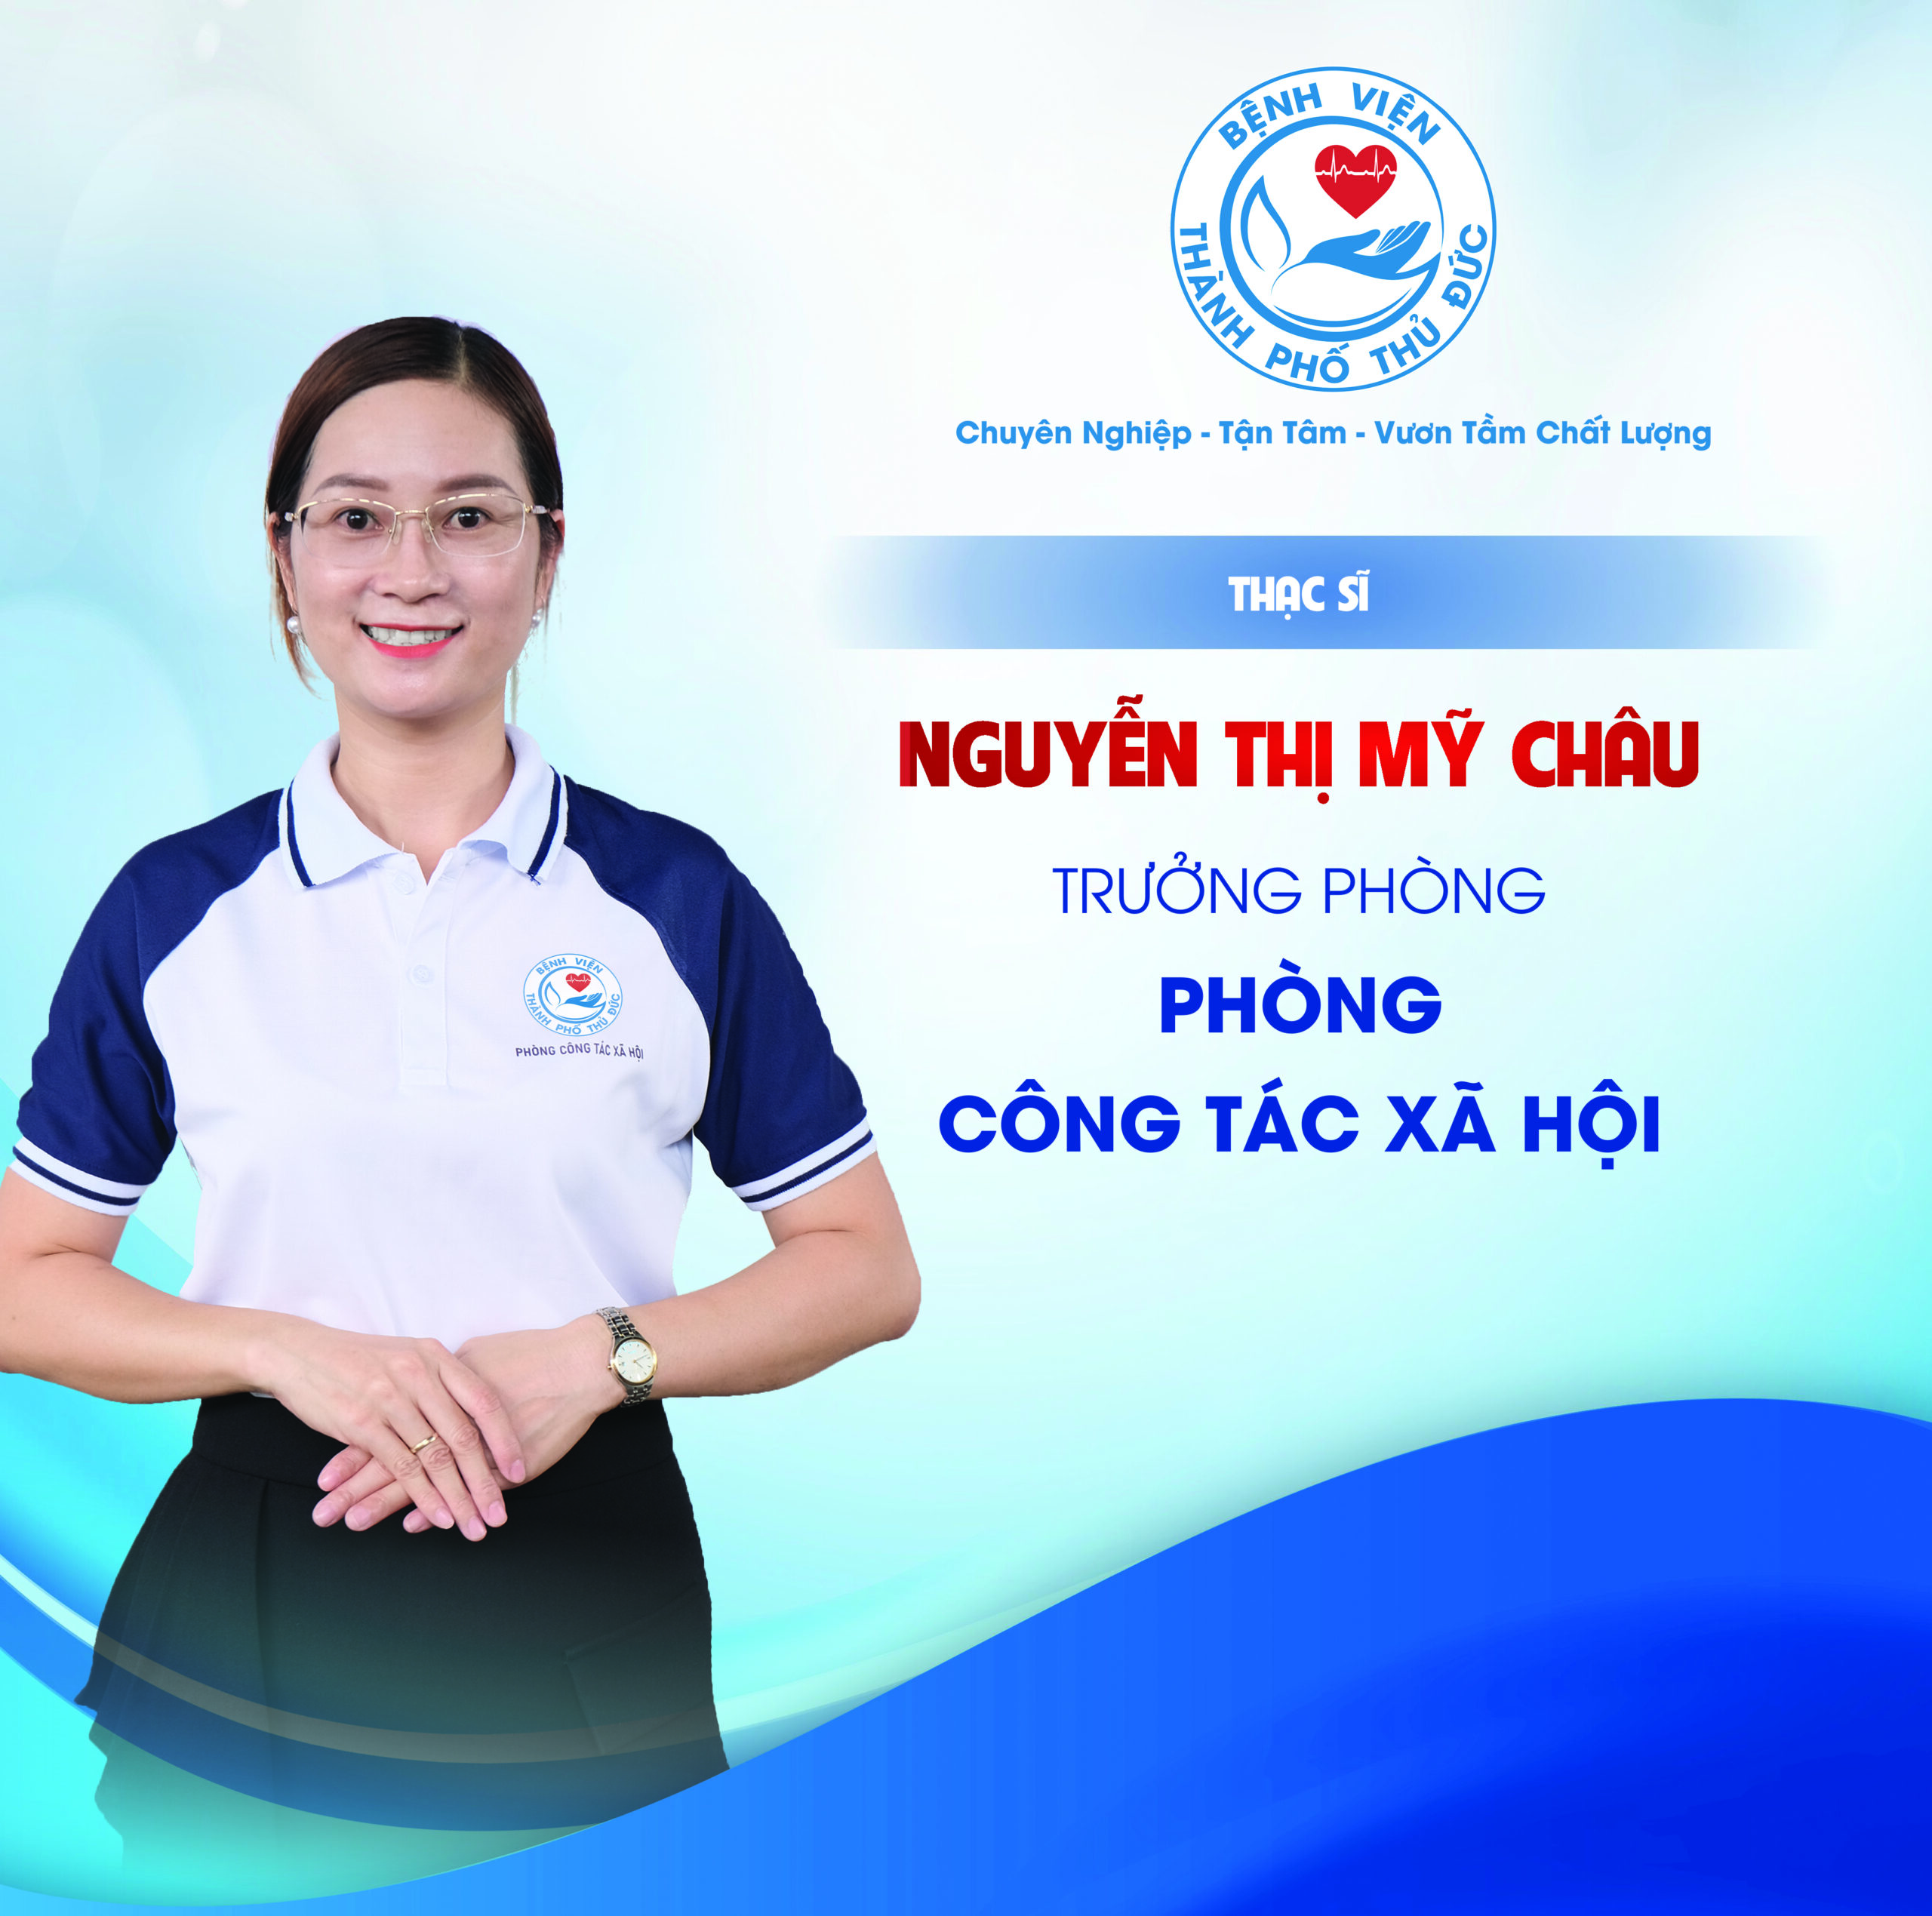 ThS. Nguyễn Thị Mỹ Châu - Trưởng phòng Công tác xã hội